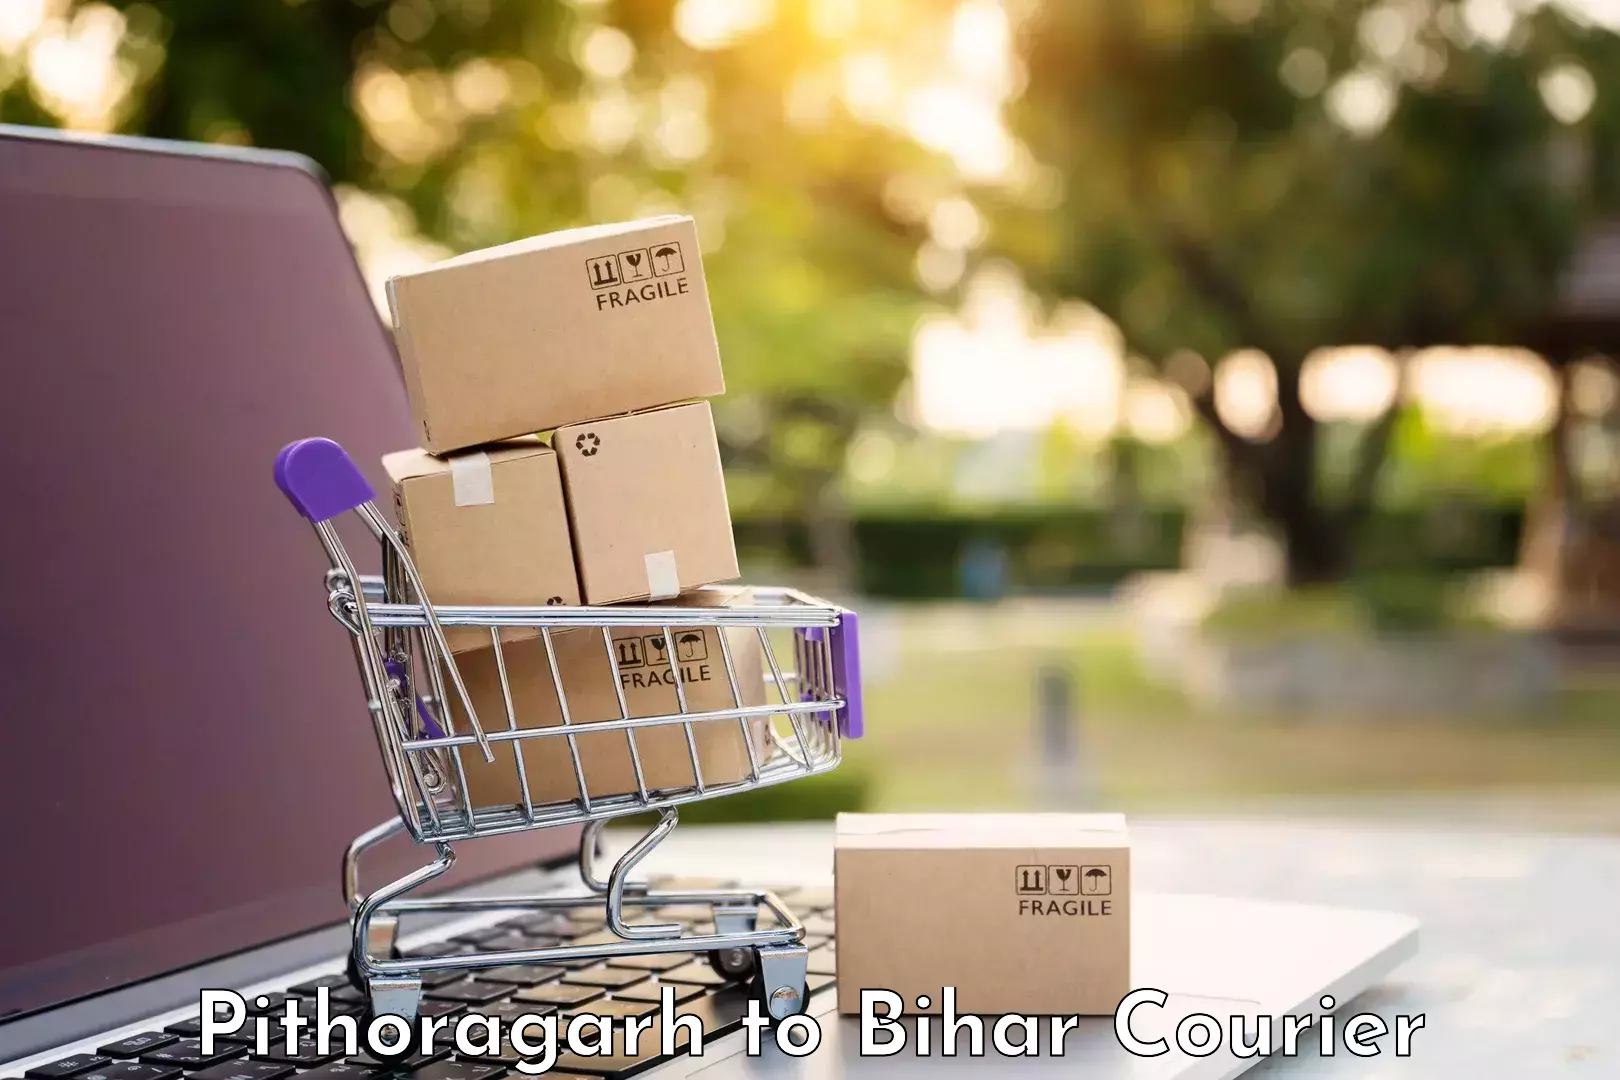 Weekend baggage shipping Pithoragarh to Bihar